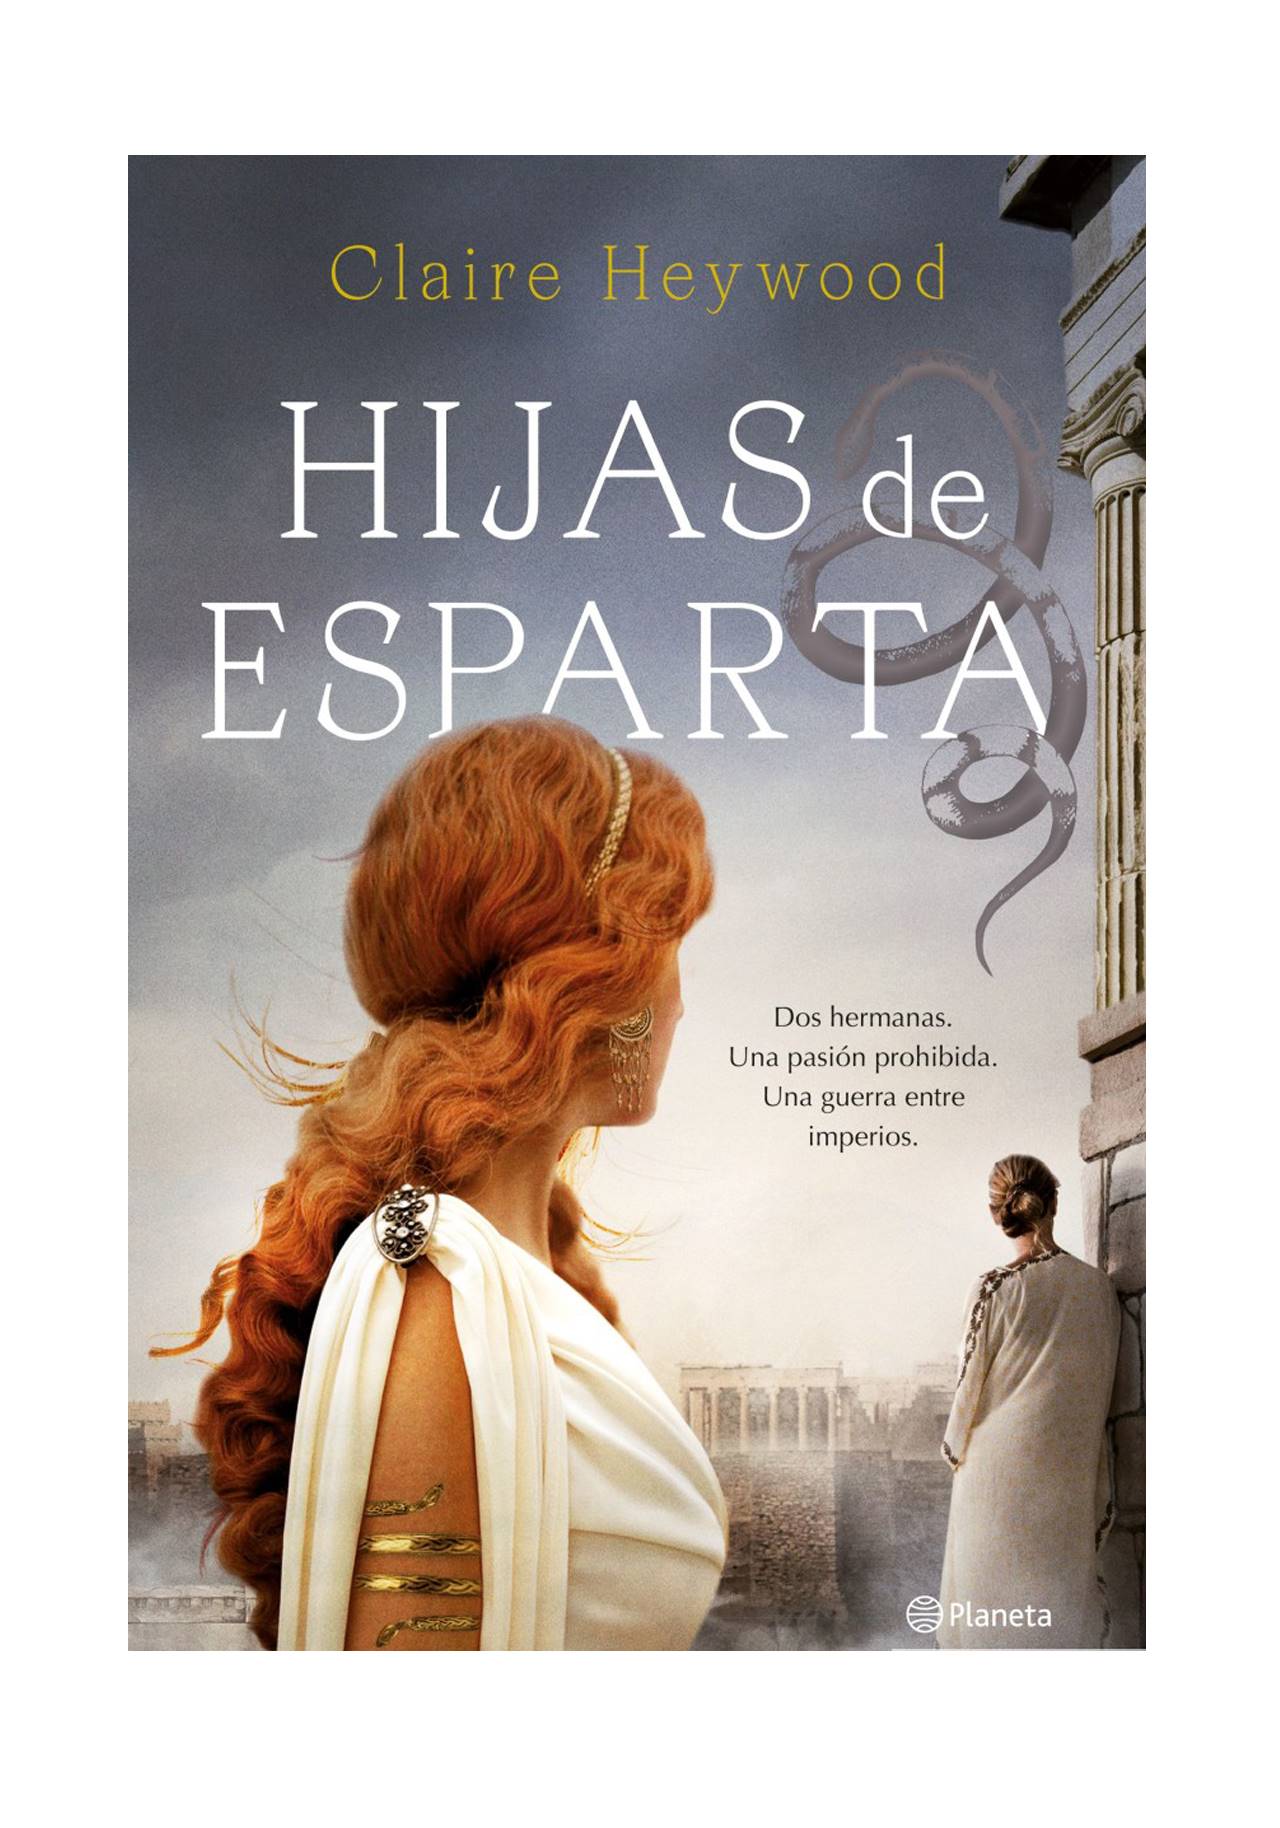 Novelas históricas imprescindibles: Hijas de Esparta de Claire Heywood (2021, Planeta)